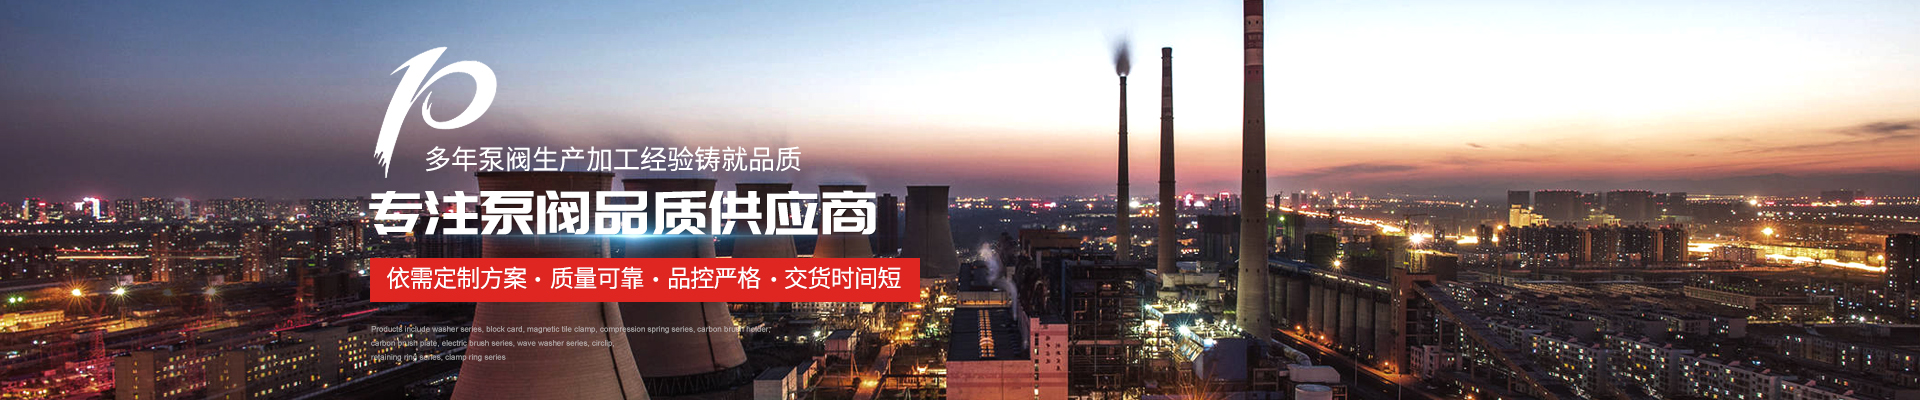 油泵|油泵廠家 - 上海高適泵閥有限公司